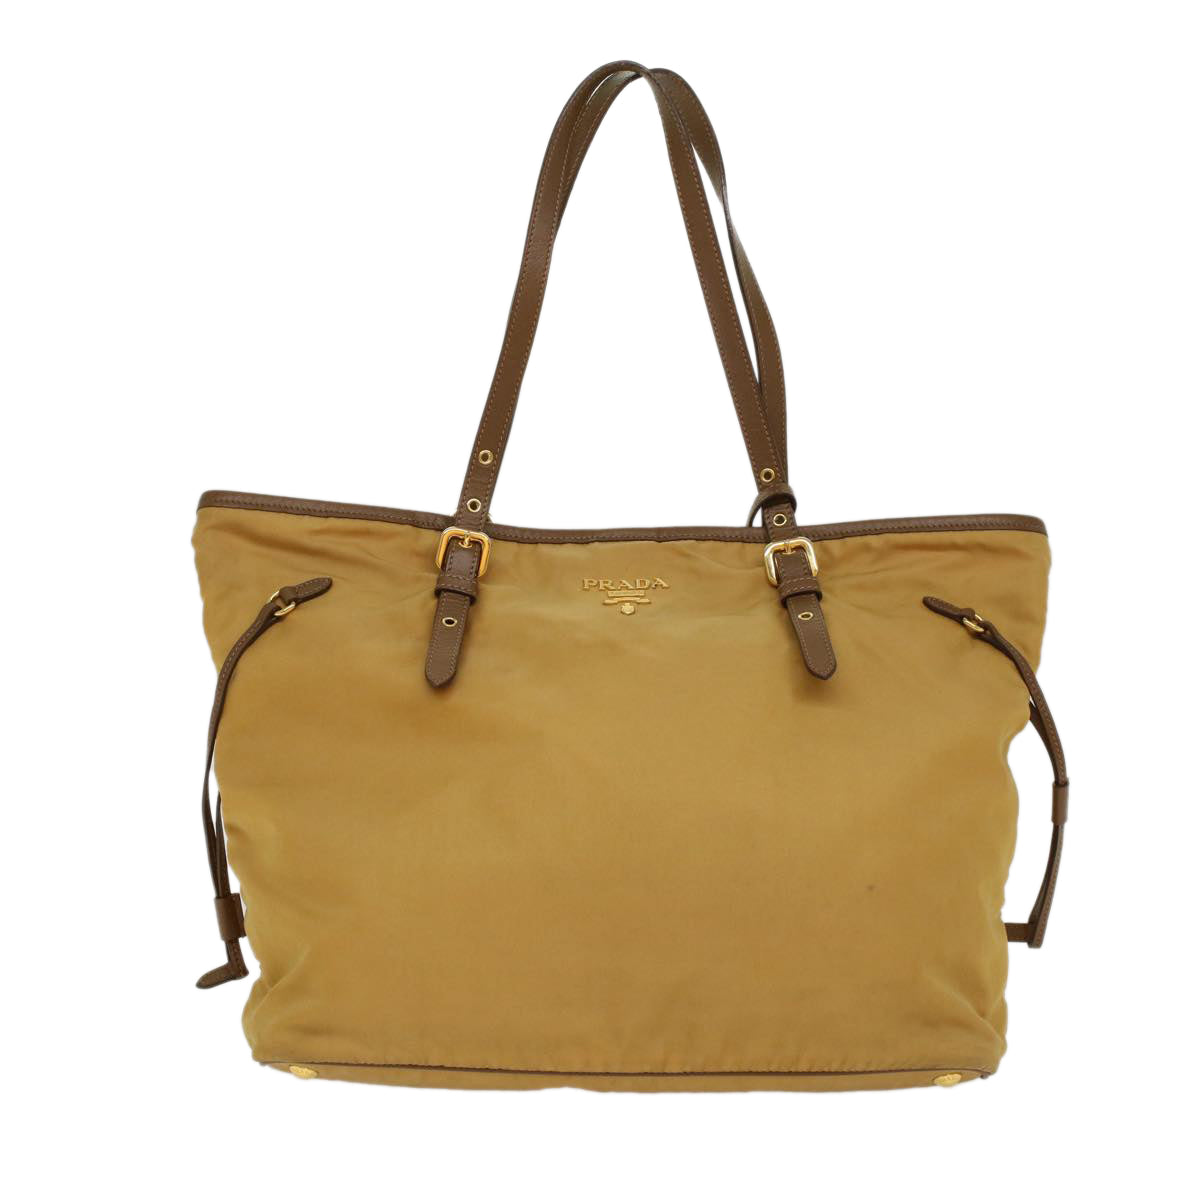 PRADA Tote Bag Nylon Leather Beige Yellow Auth ki3391 - 0